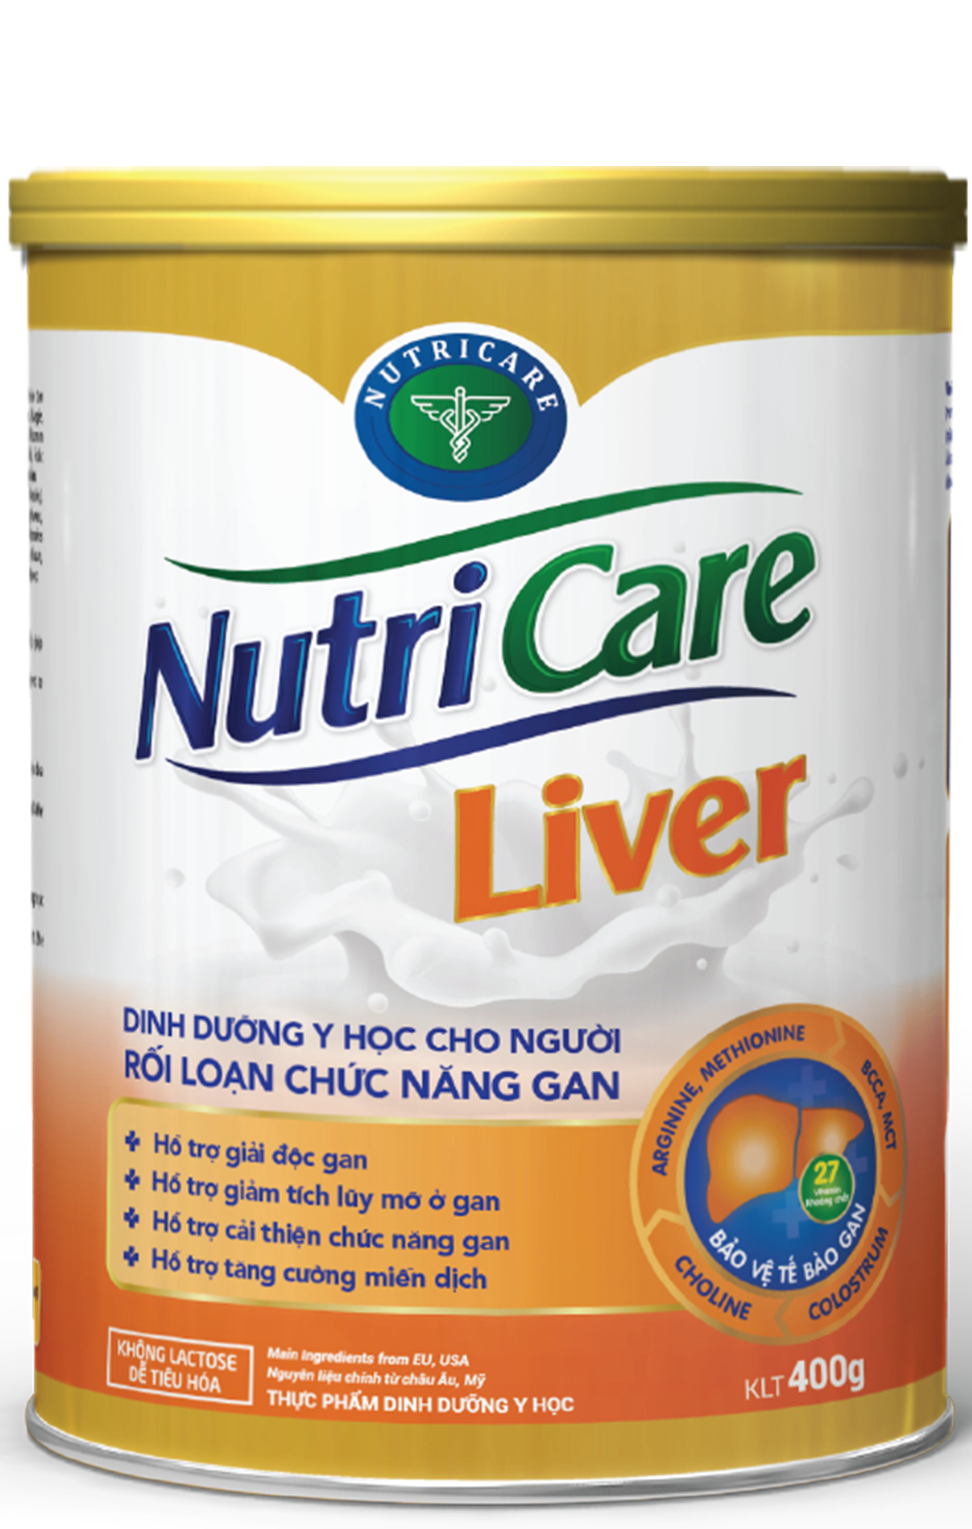 Sữa bột Nutricare Liver dinh dưỡng y học chuyên biệt cải thiện chức năng gan (400g)